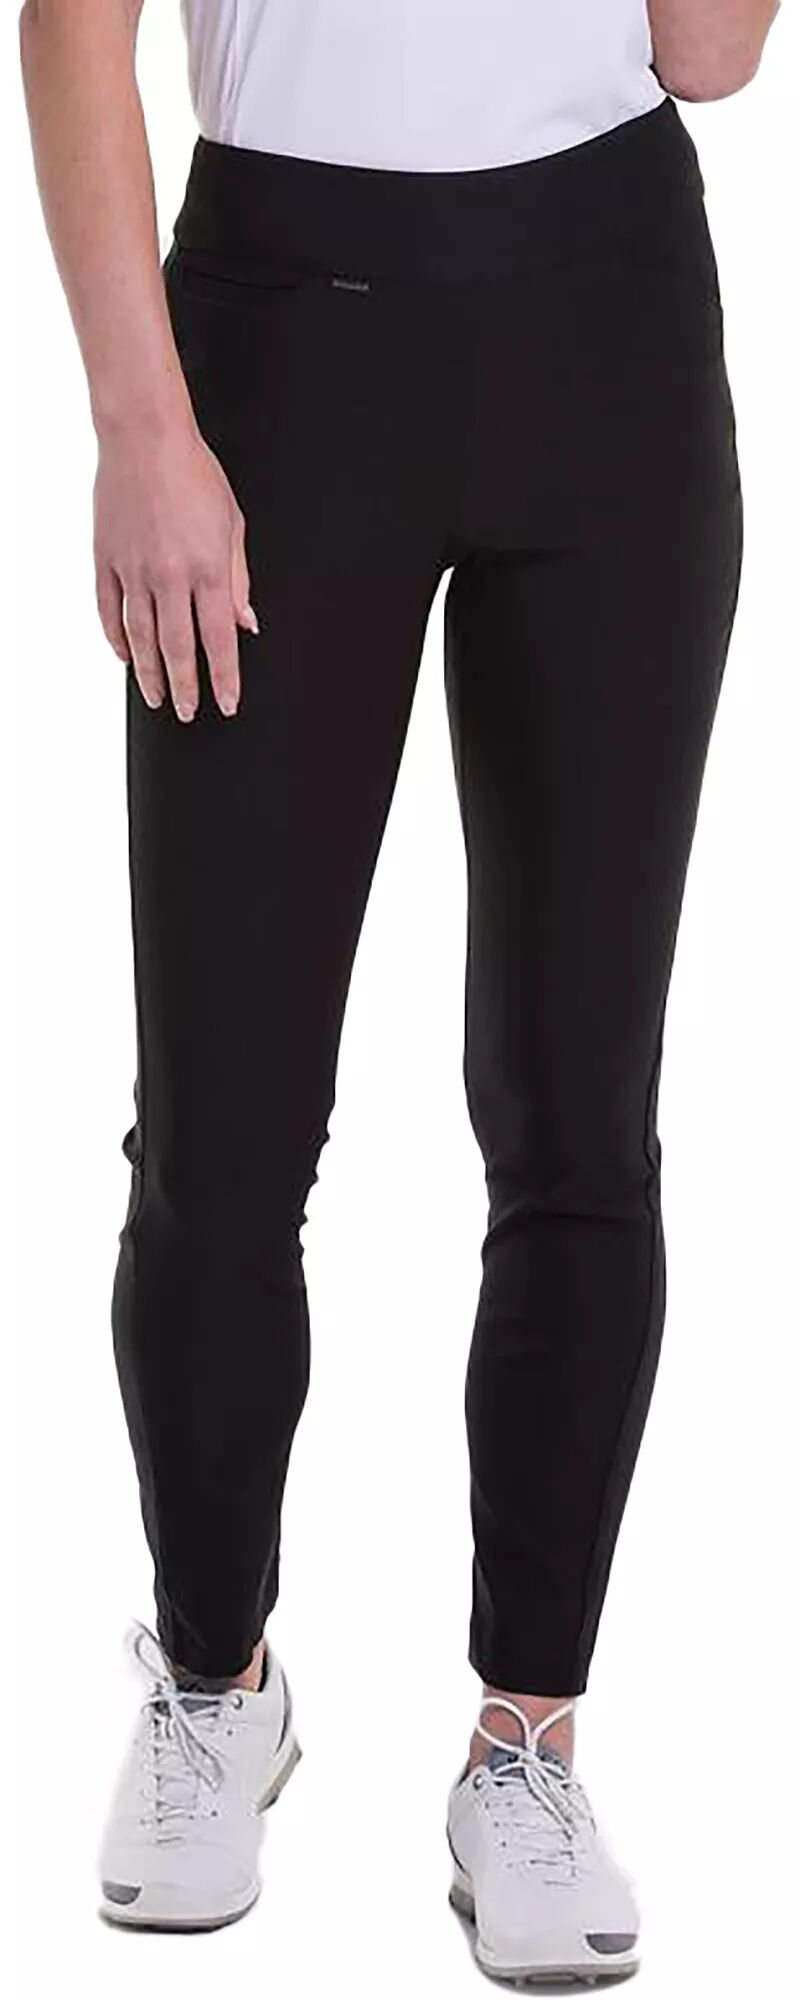 Женские компрессионные брюки для гольфа Ep New York шириной 39,5 дюйма, черный